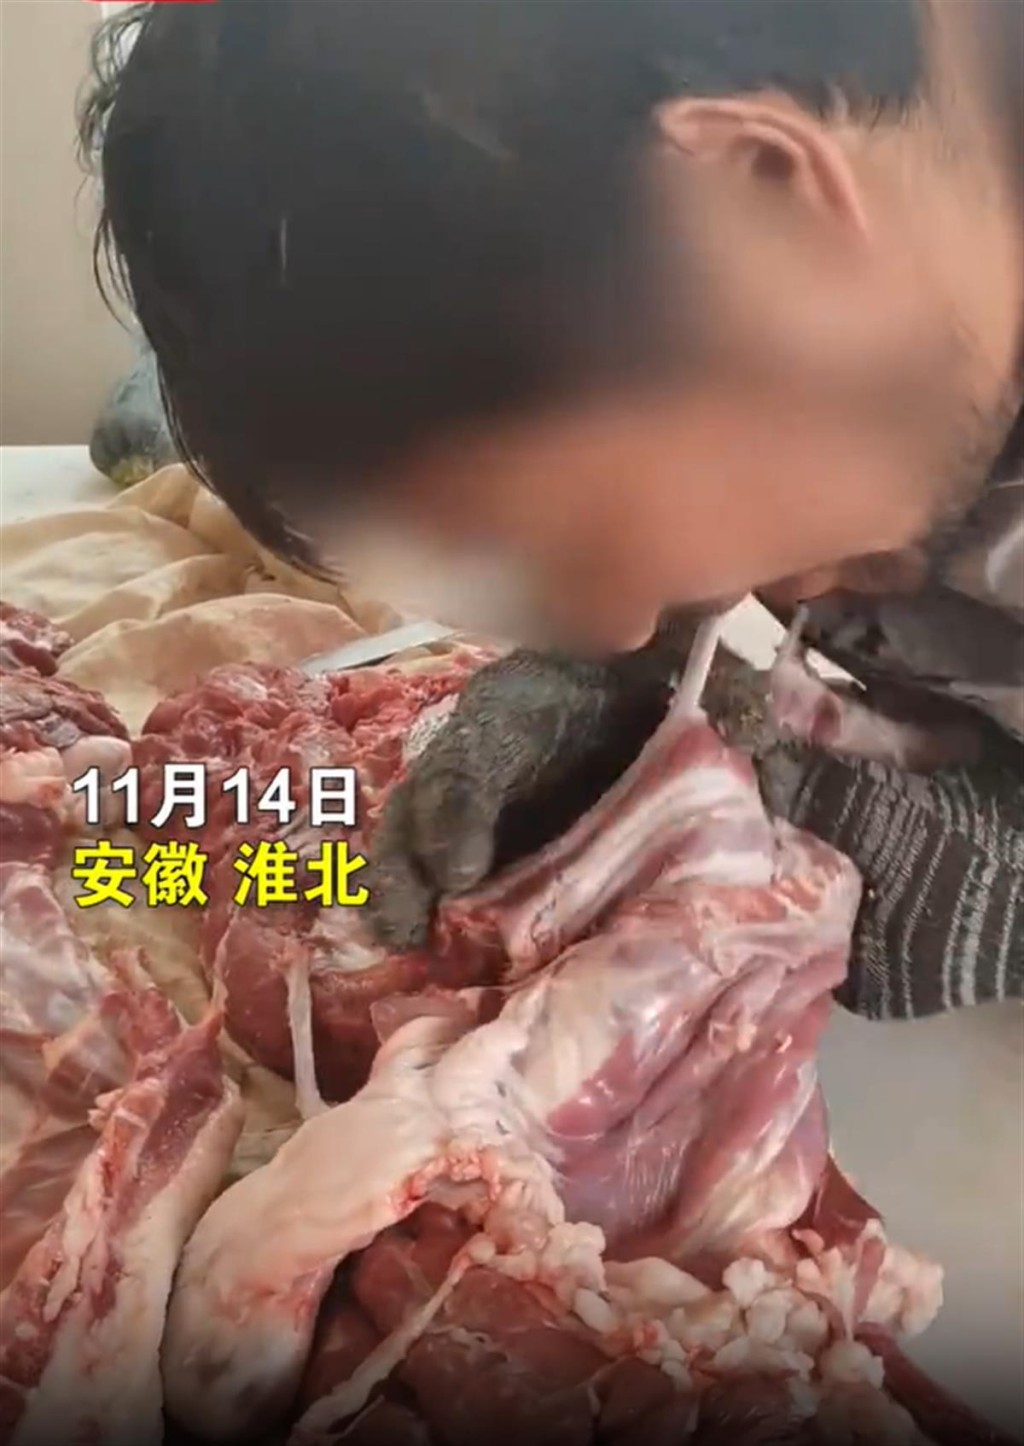 视频显示有肉店店员用嘴剔肉，并称是传统工艺。